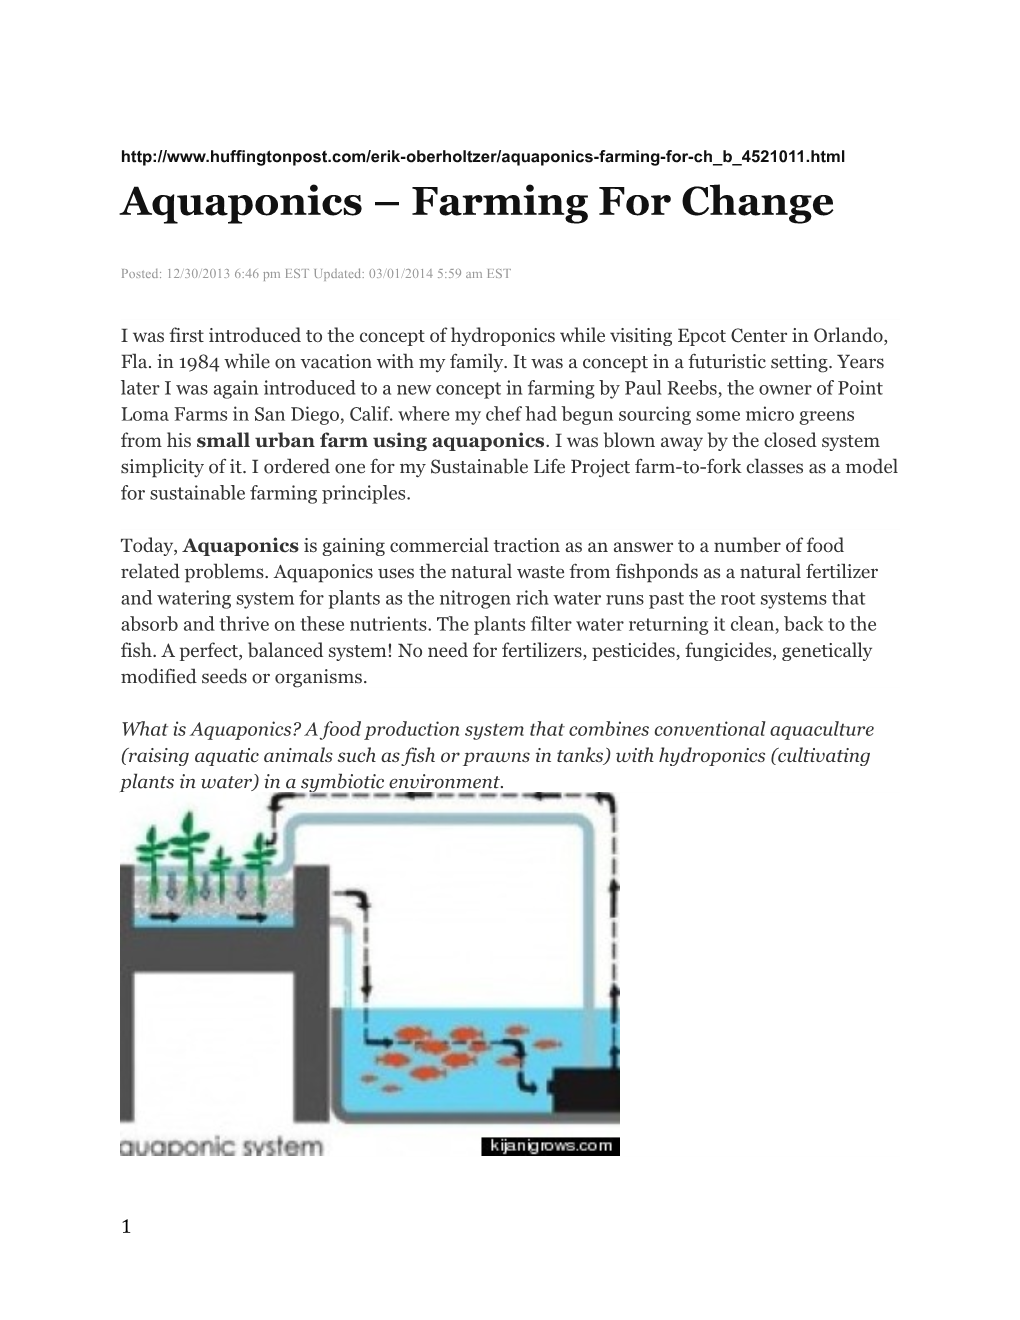 Aquaponics Farming for Change